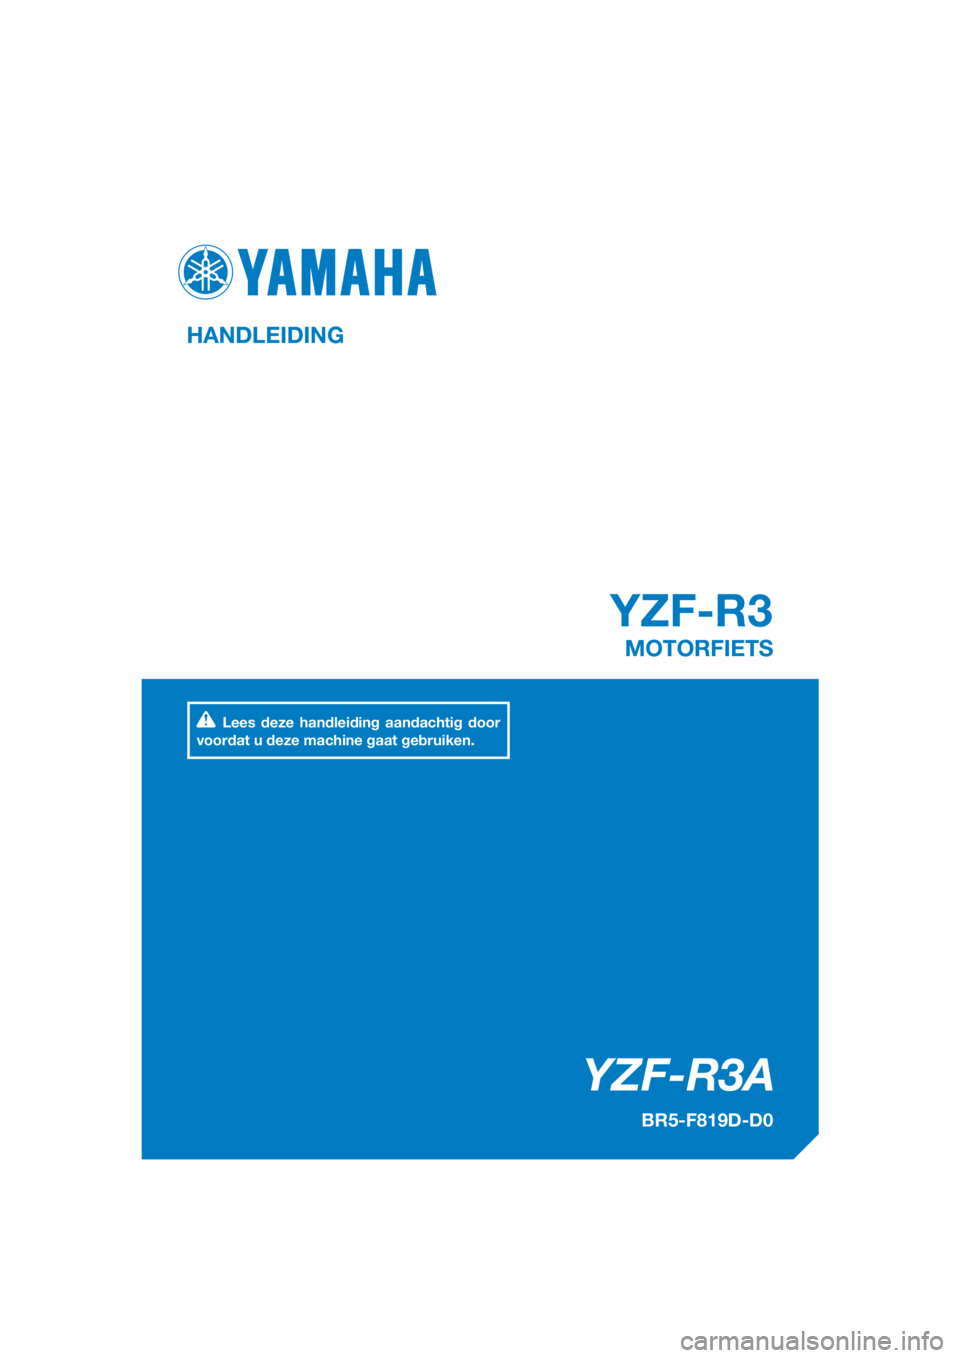 YAMAHA YZF-R3 2018  Instructieboekje (in Dutch) DIC183
YZF-R3A
 YZF-R3
HANDLEIDING
BR5-F819D-D0
MOTORFIETS
Lees deze handleiding aandachtig door 
voordat u deze machine gaat gebruiken.
[Dutch  (D)] 